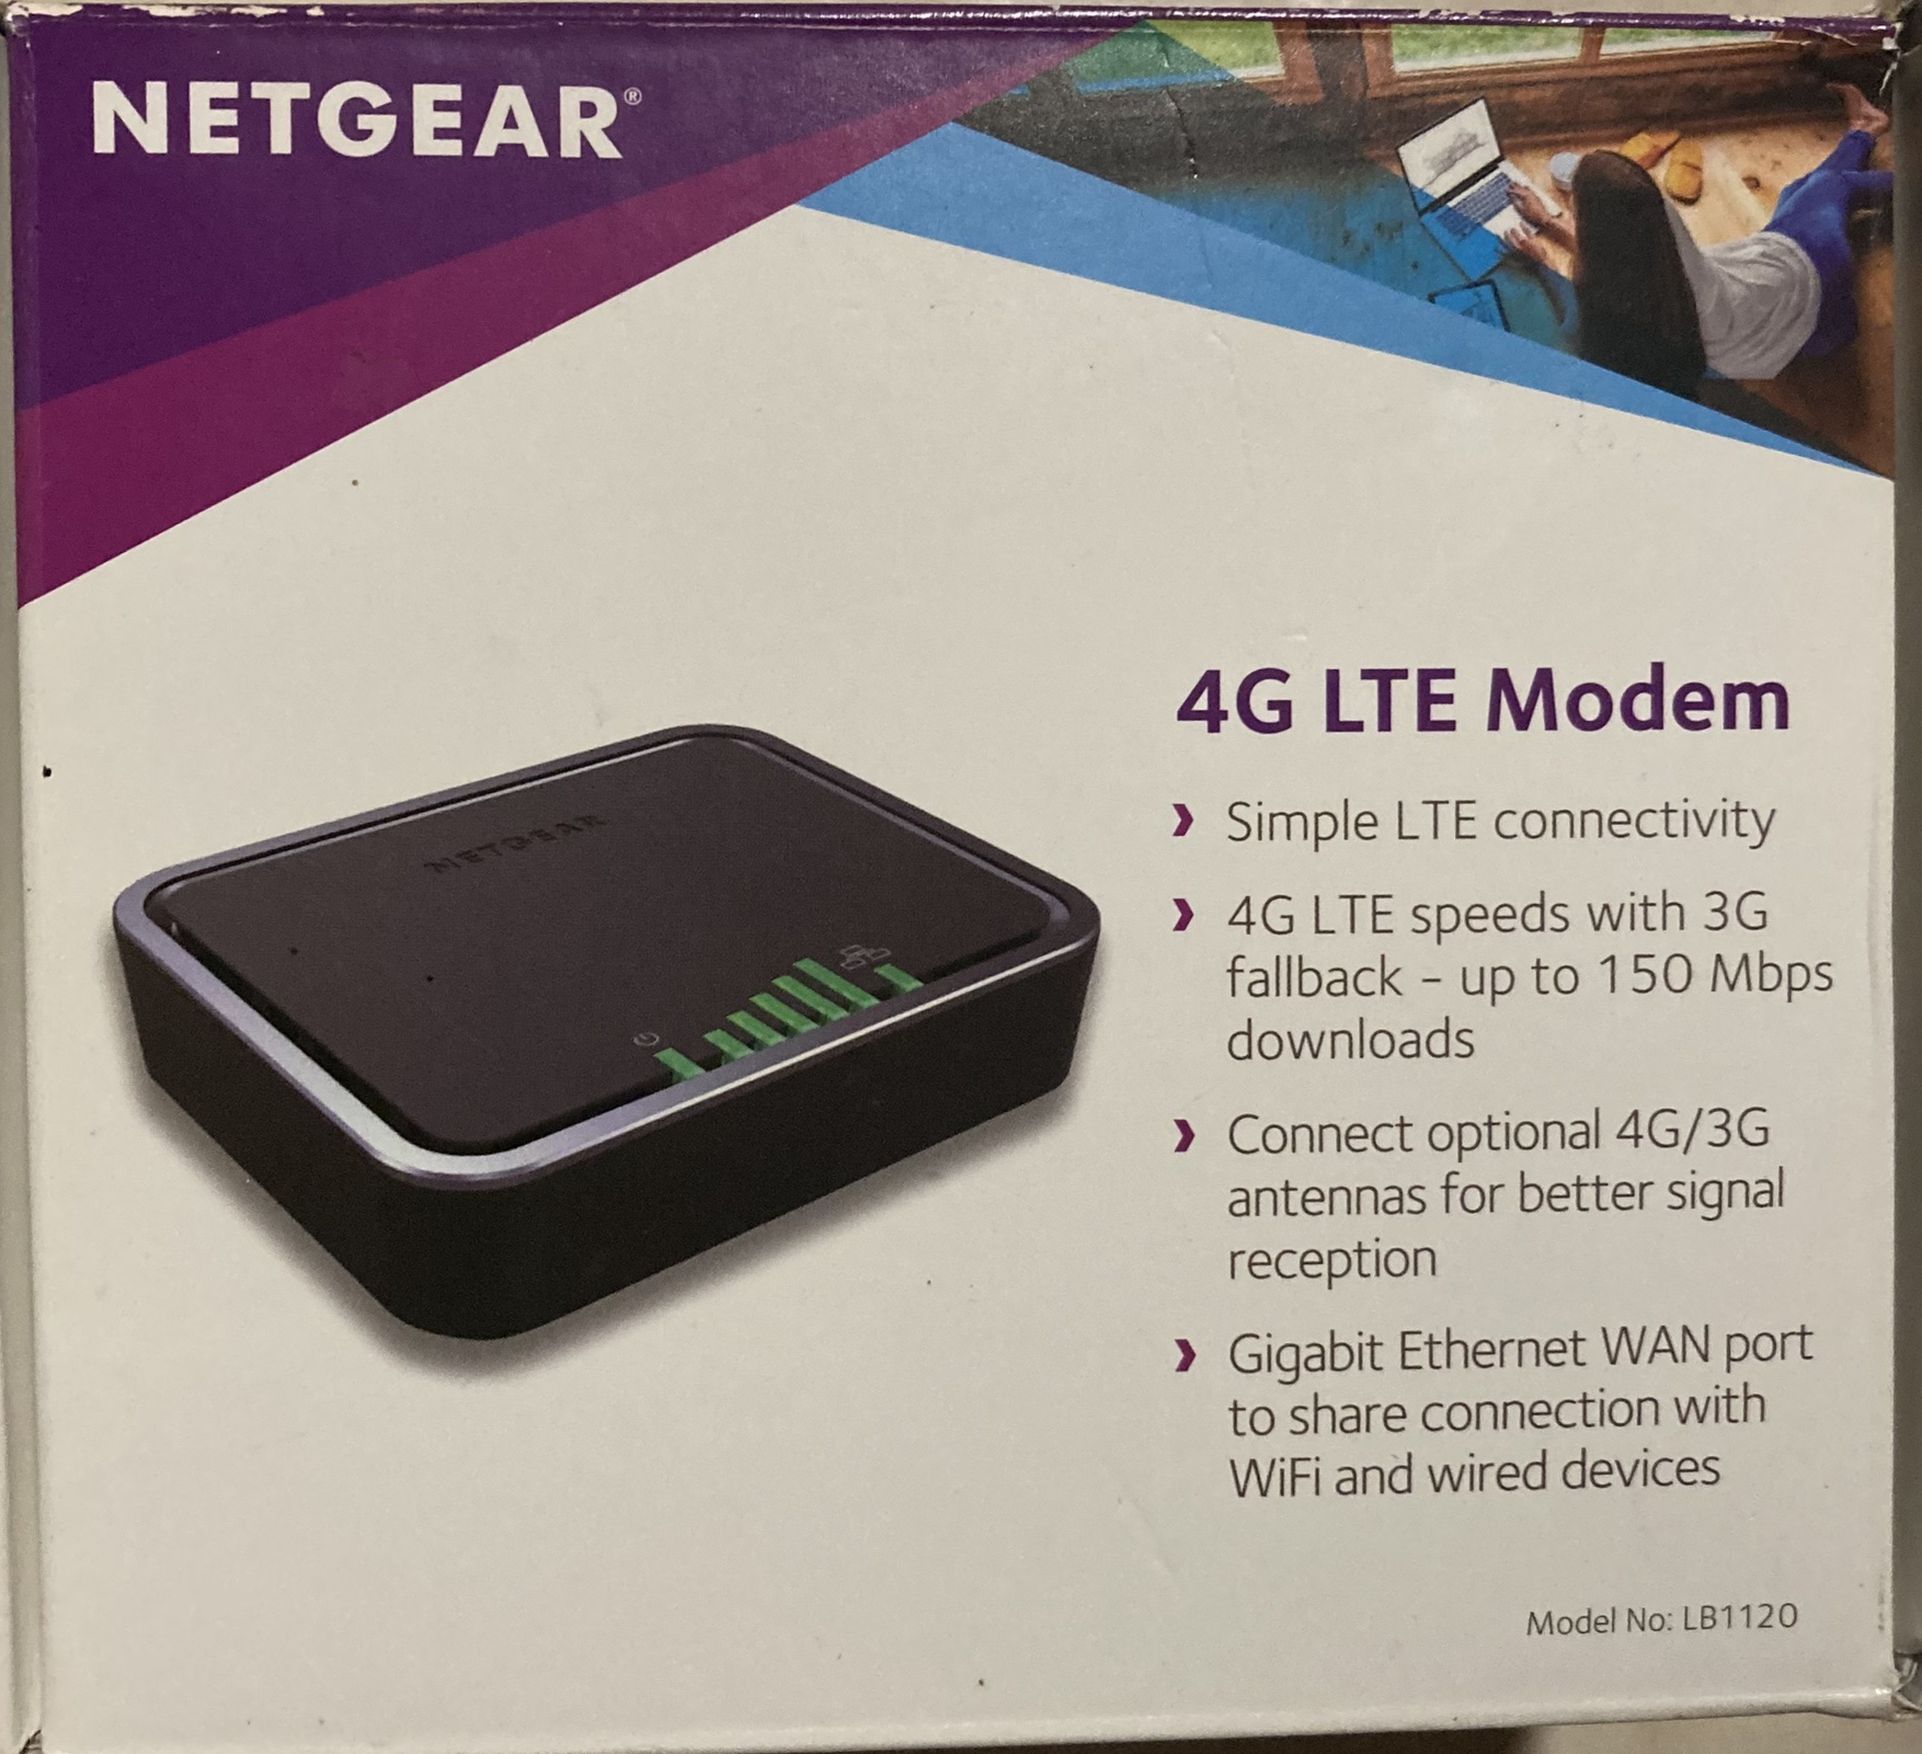 NETGEAR 4G LTE Modem New!